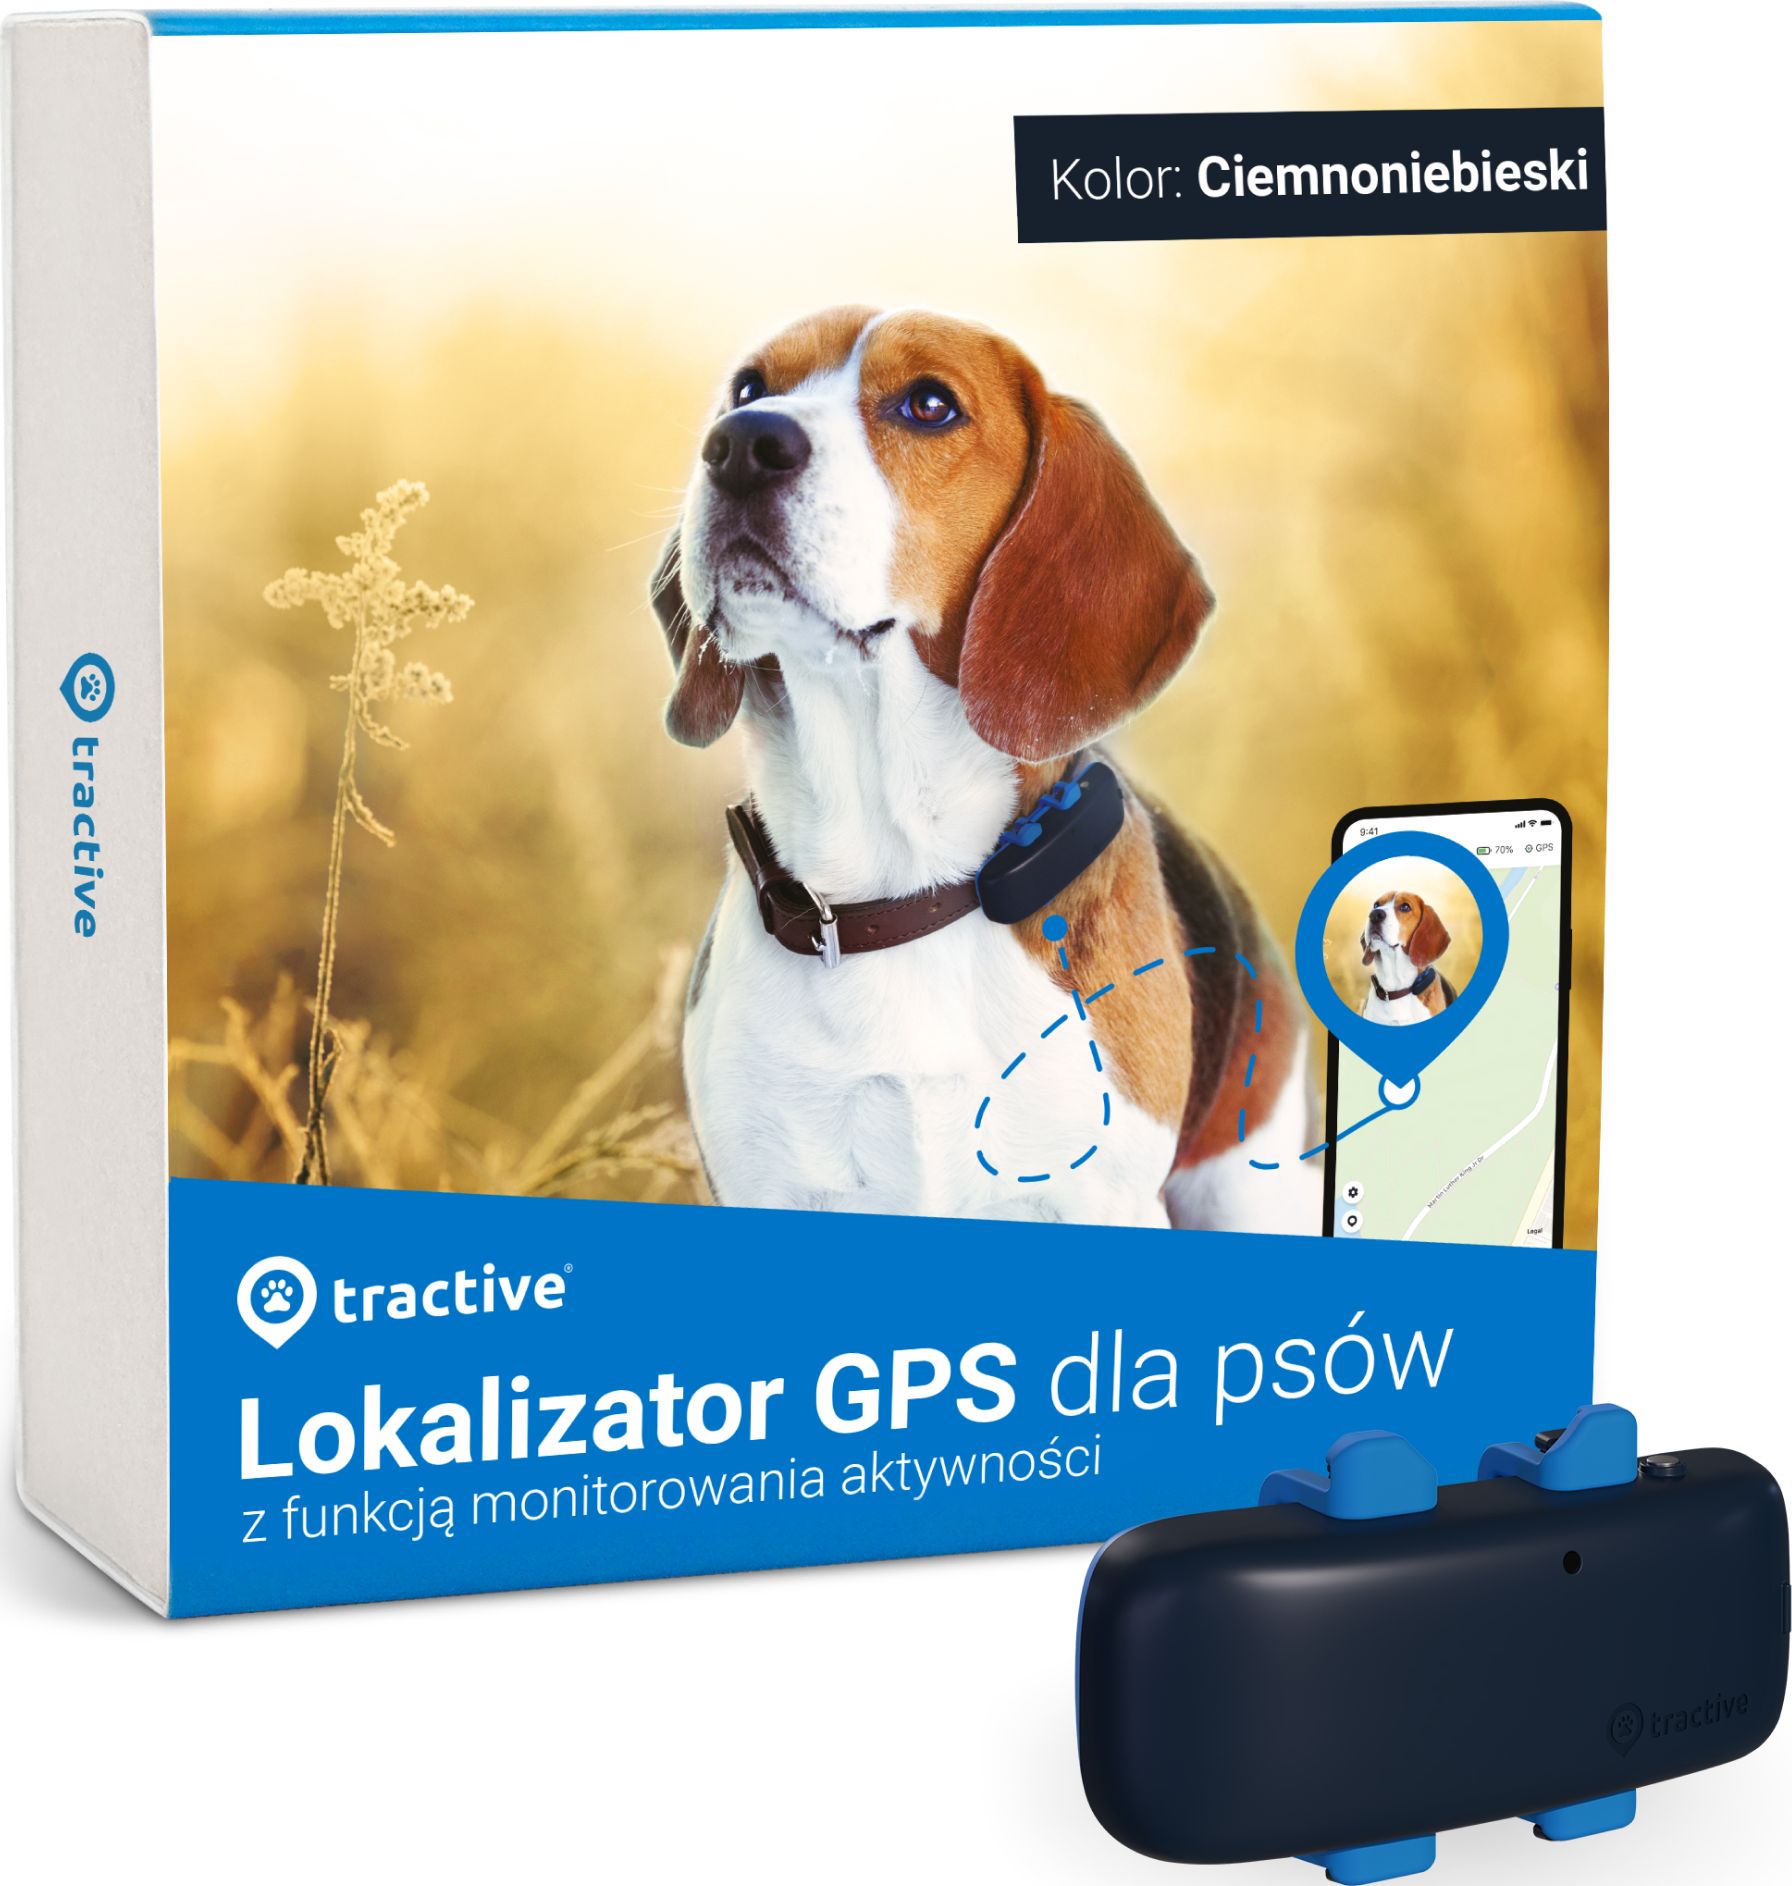 Tractive Lokalizator GPS da psów LTE